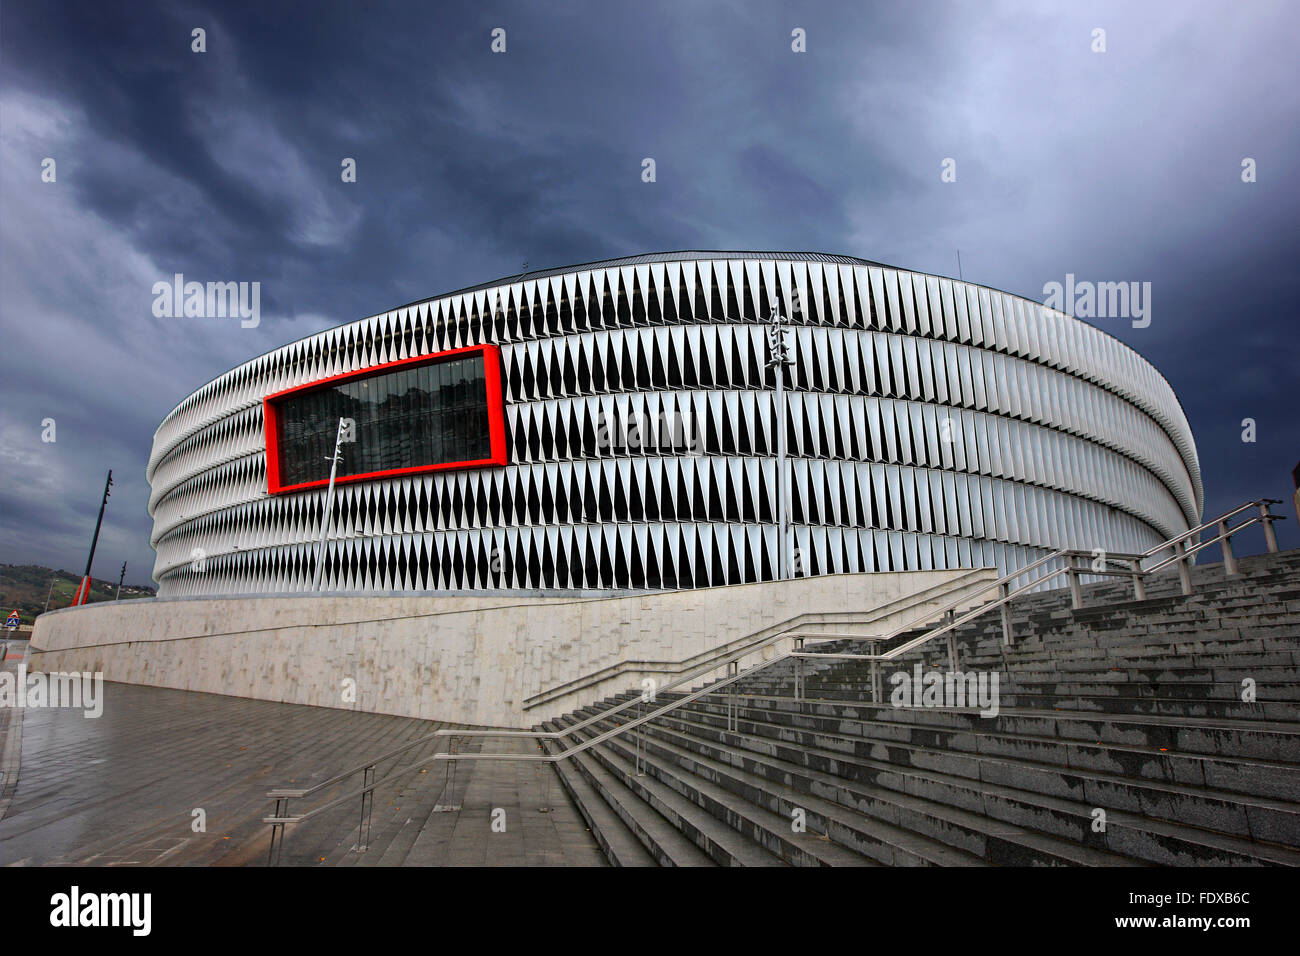 El legendario estadio 'San Mamés', 'casa' del equipo de fútbol Athletic de Bilbao, Bilbao, País Vasco (País Vasco), España. Foto de stock